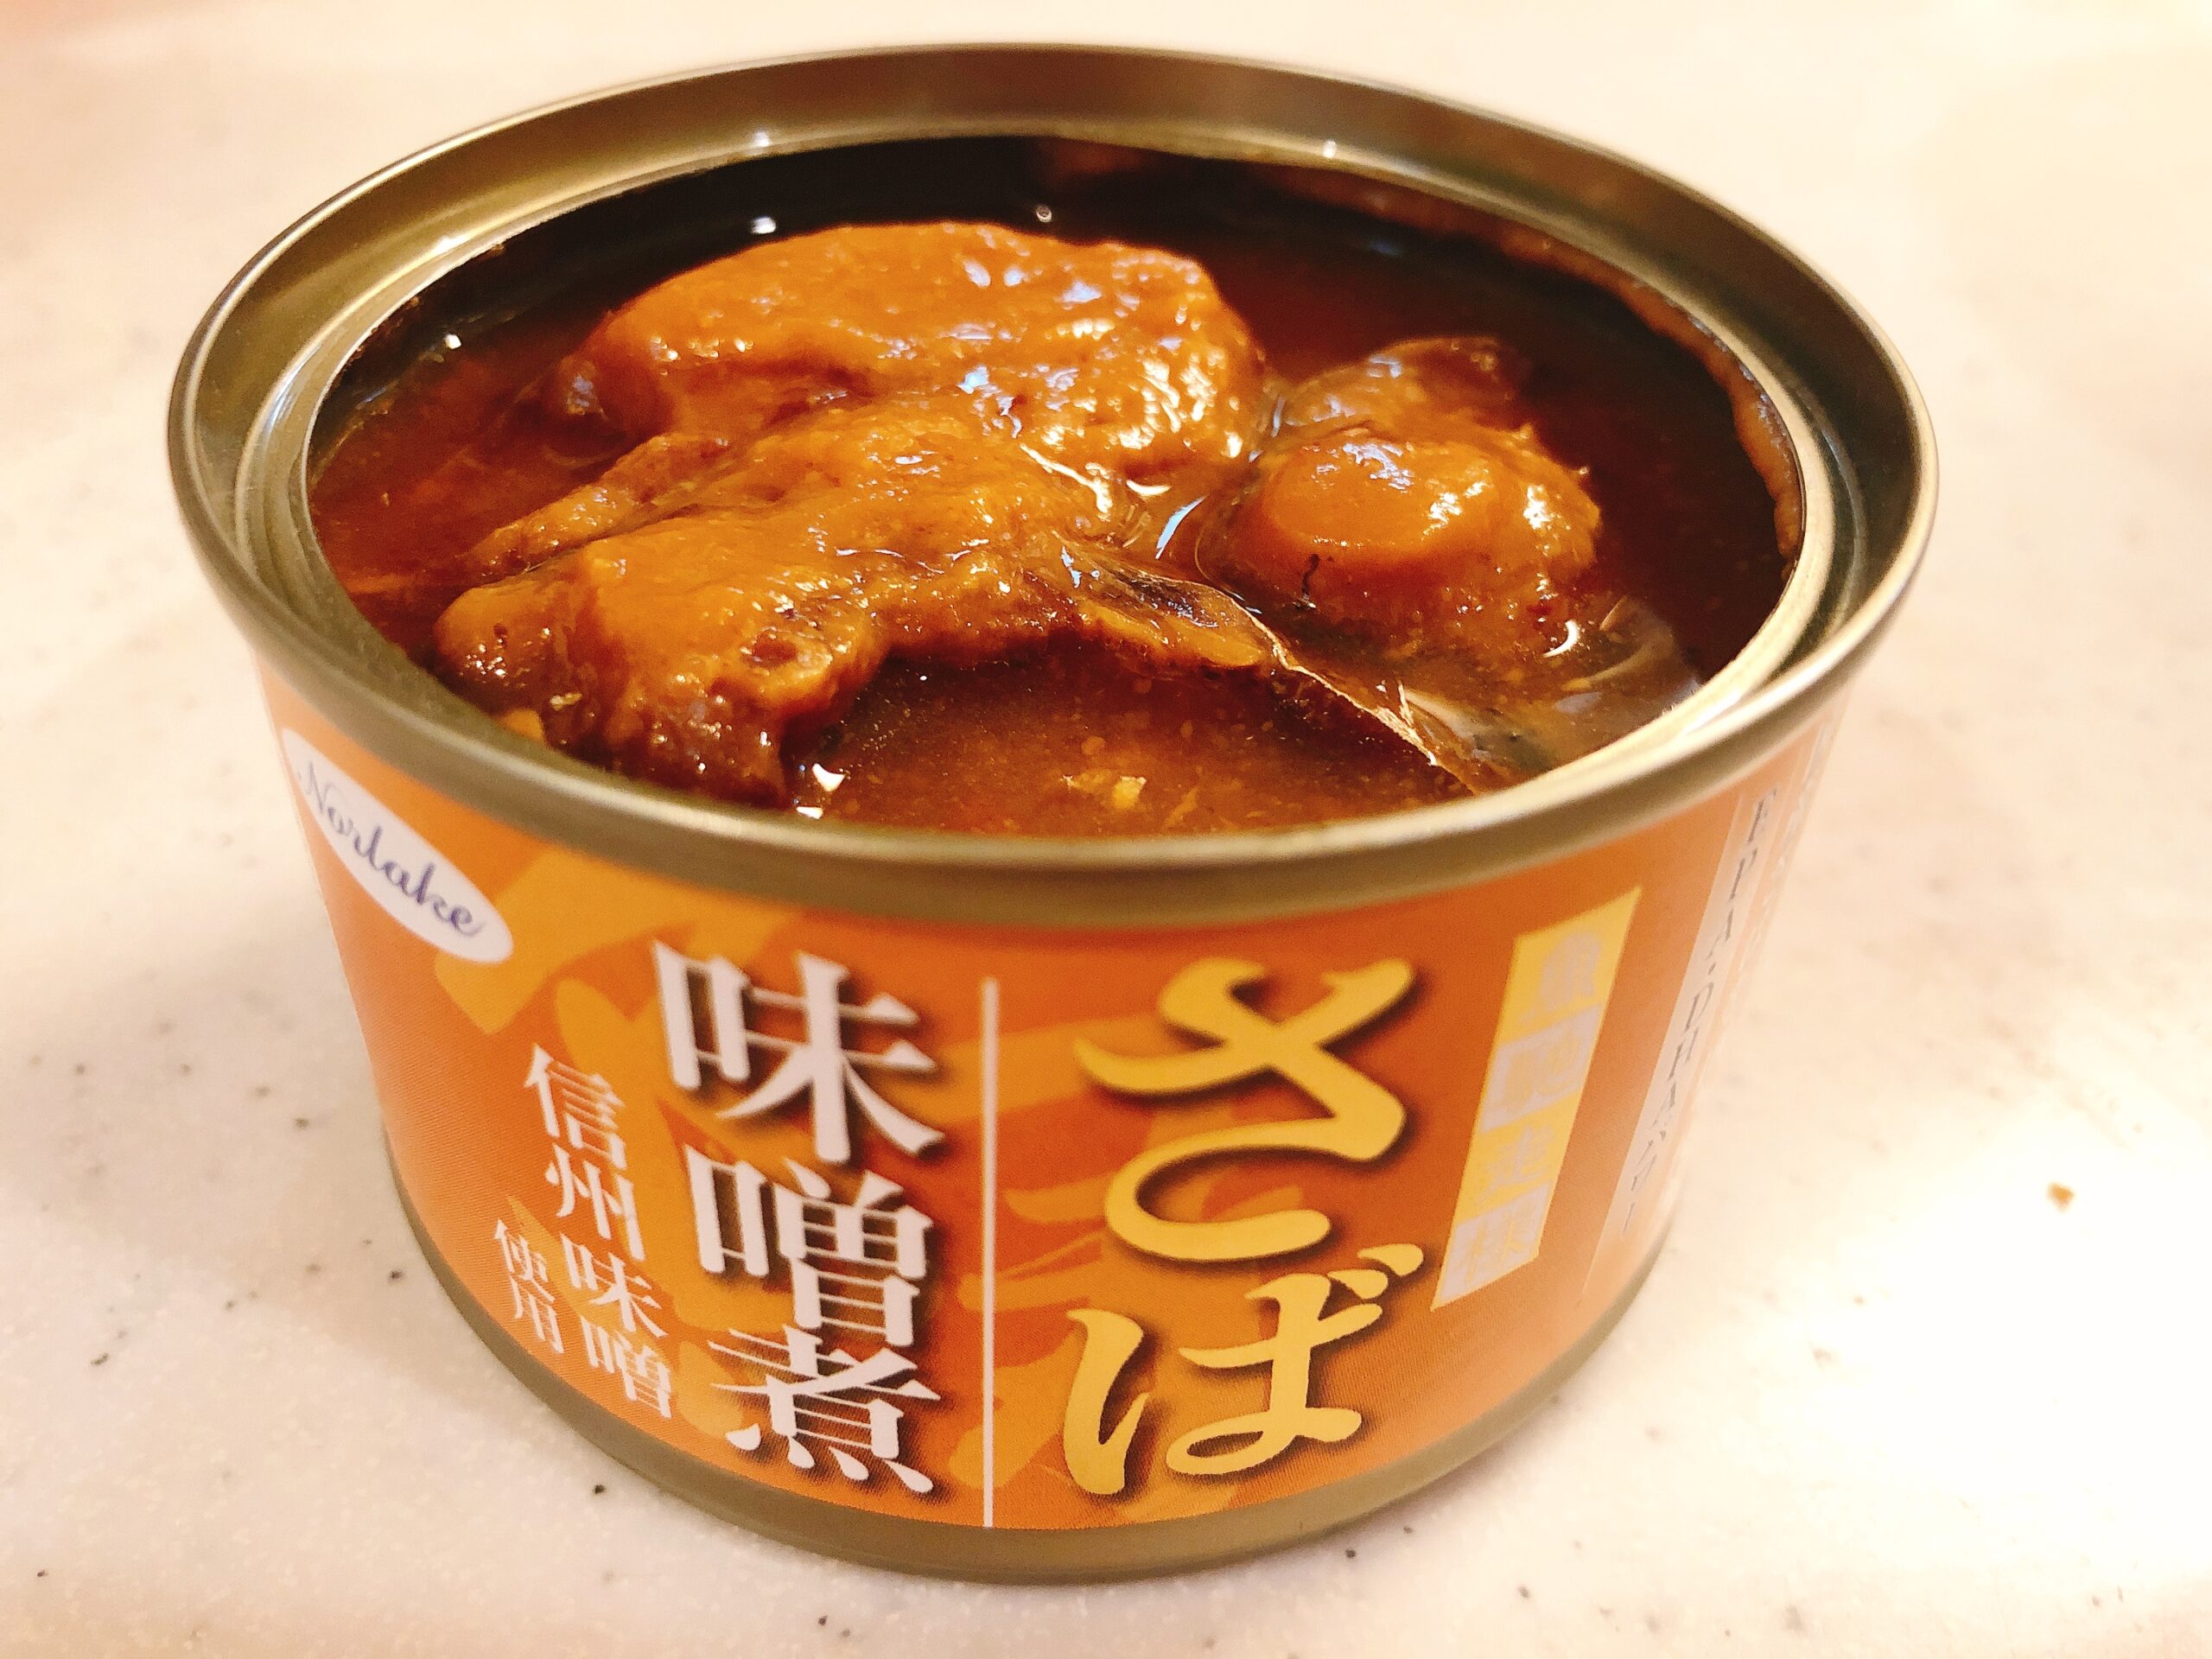 キョクヨー さばみそ煮 16缶 - 魚介類(加工食品)